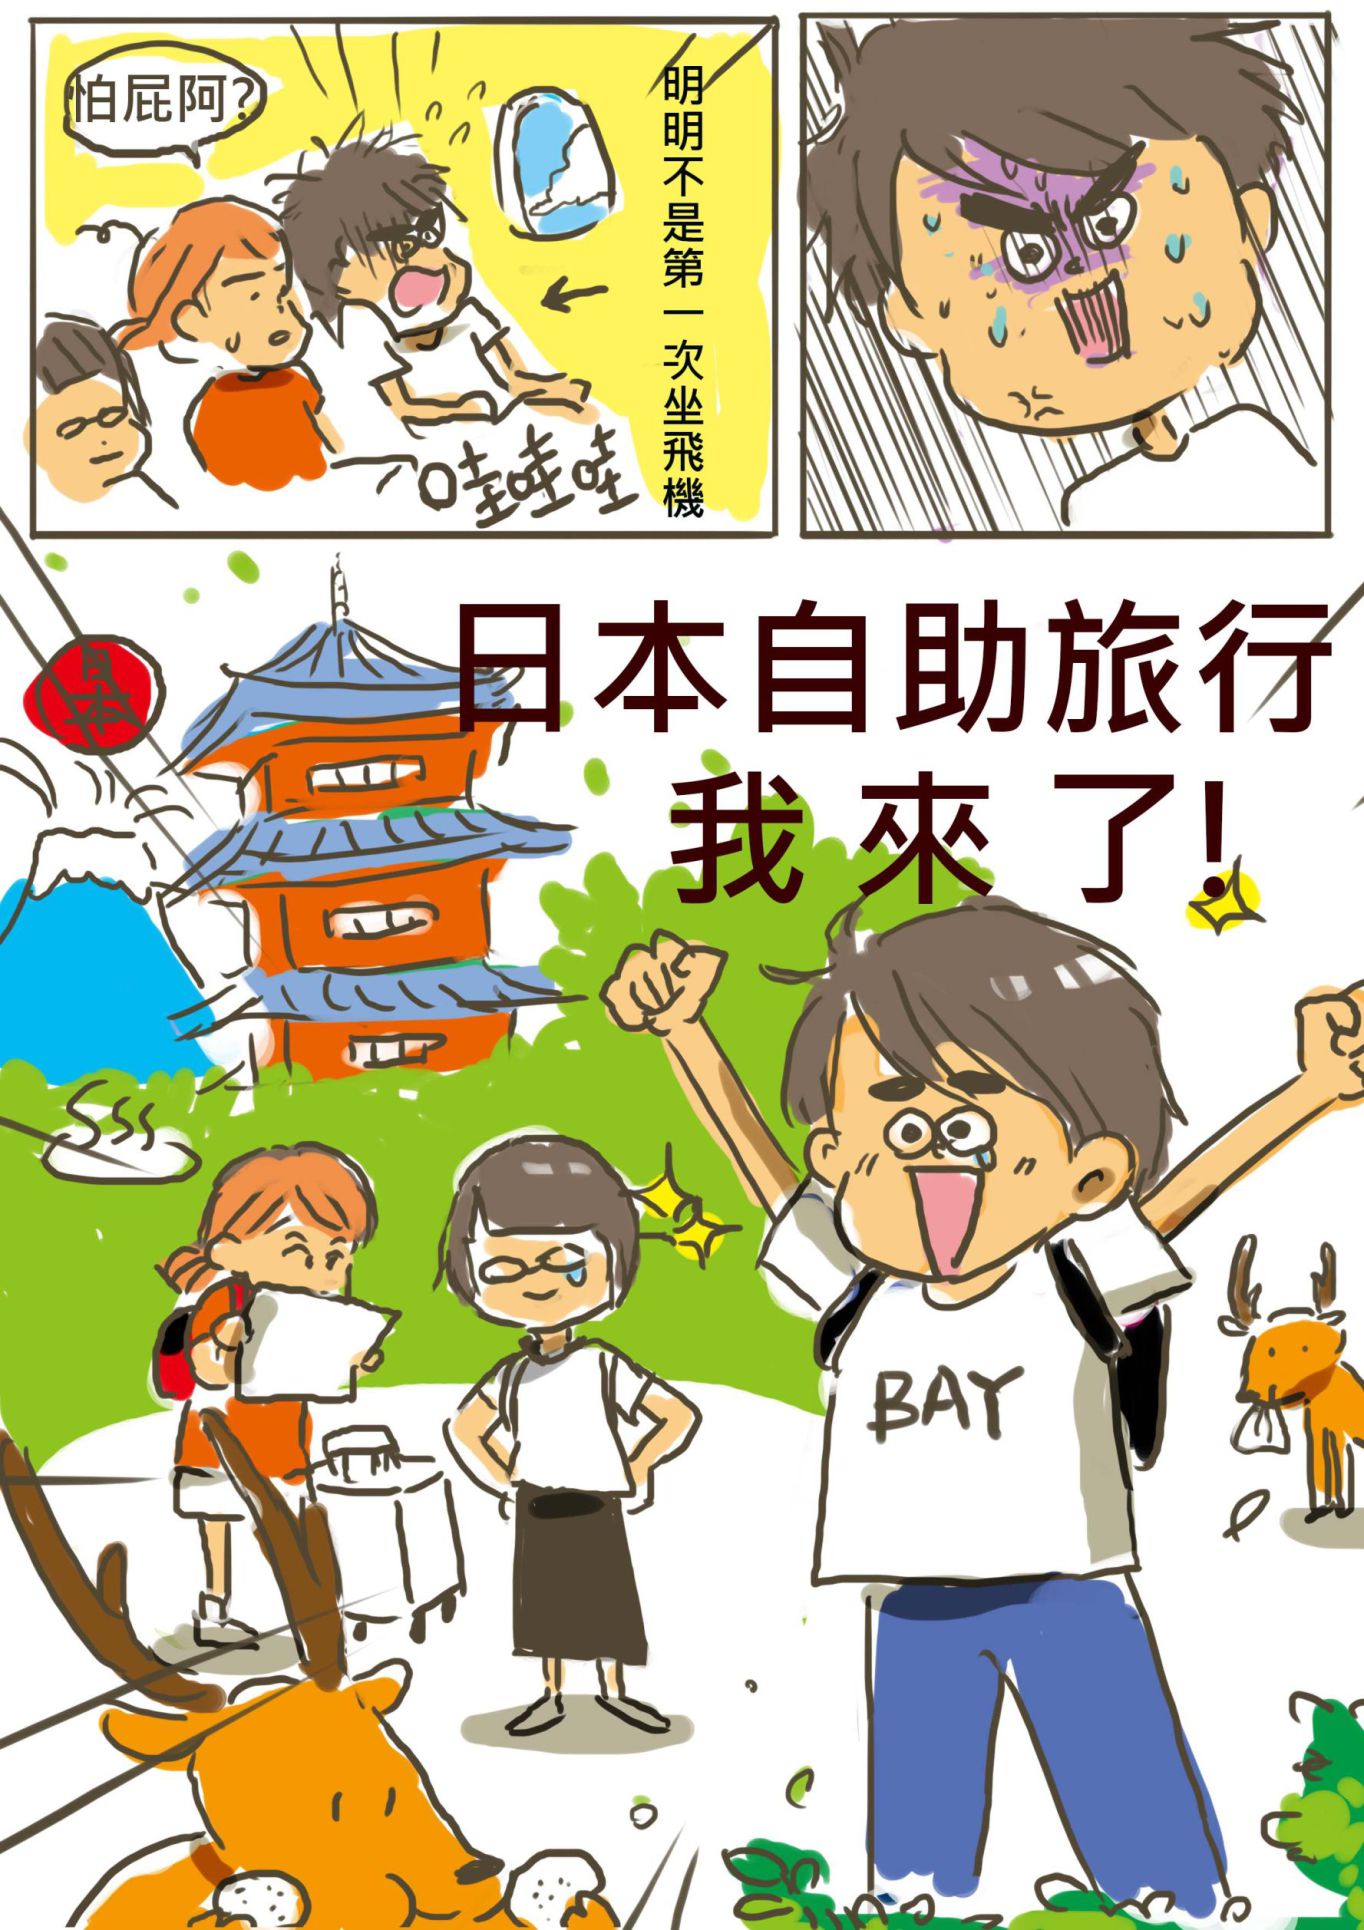 漫畫 第一次日本自助旅行1 3篇 Jassbay的創作 巴哈姆特